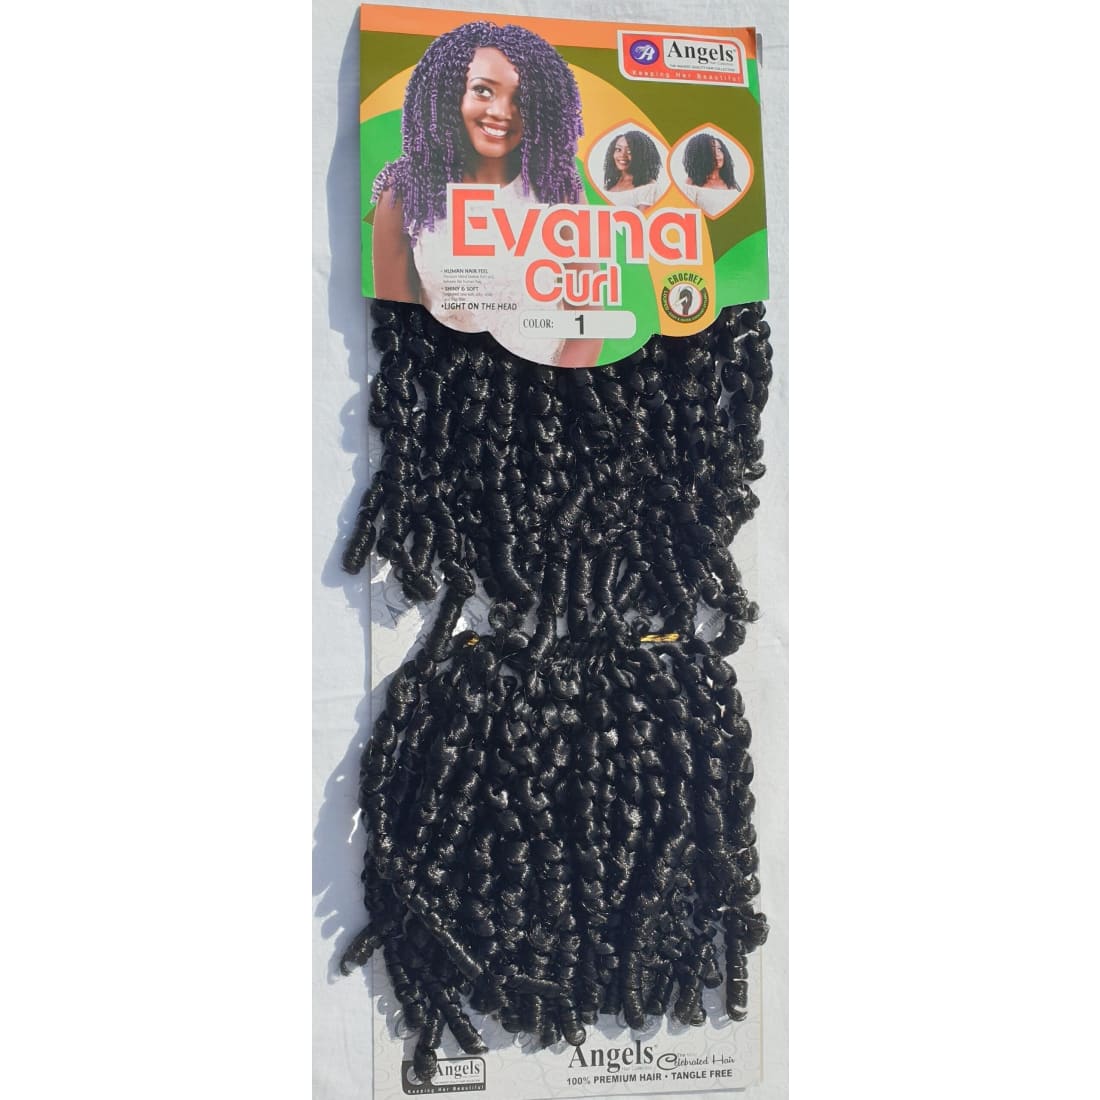 Evana Curl Colour No 1 - Crochet